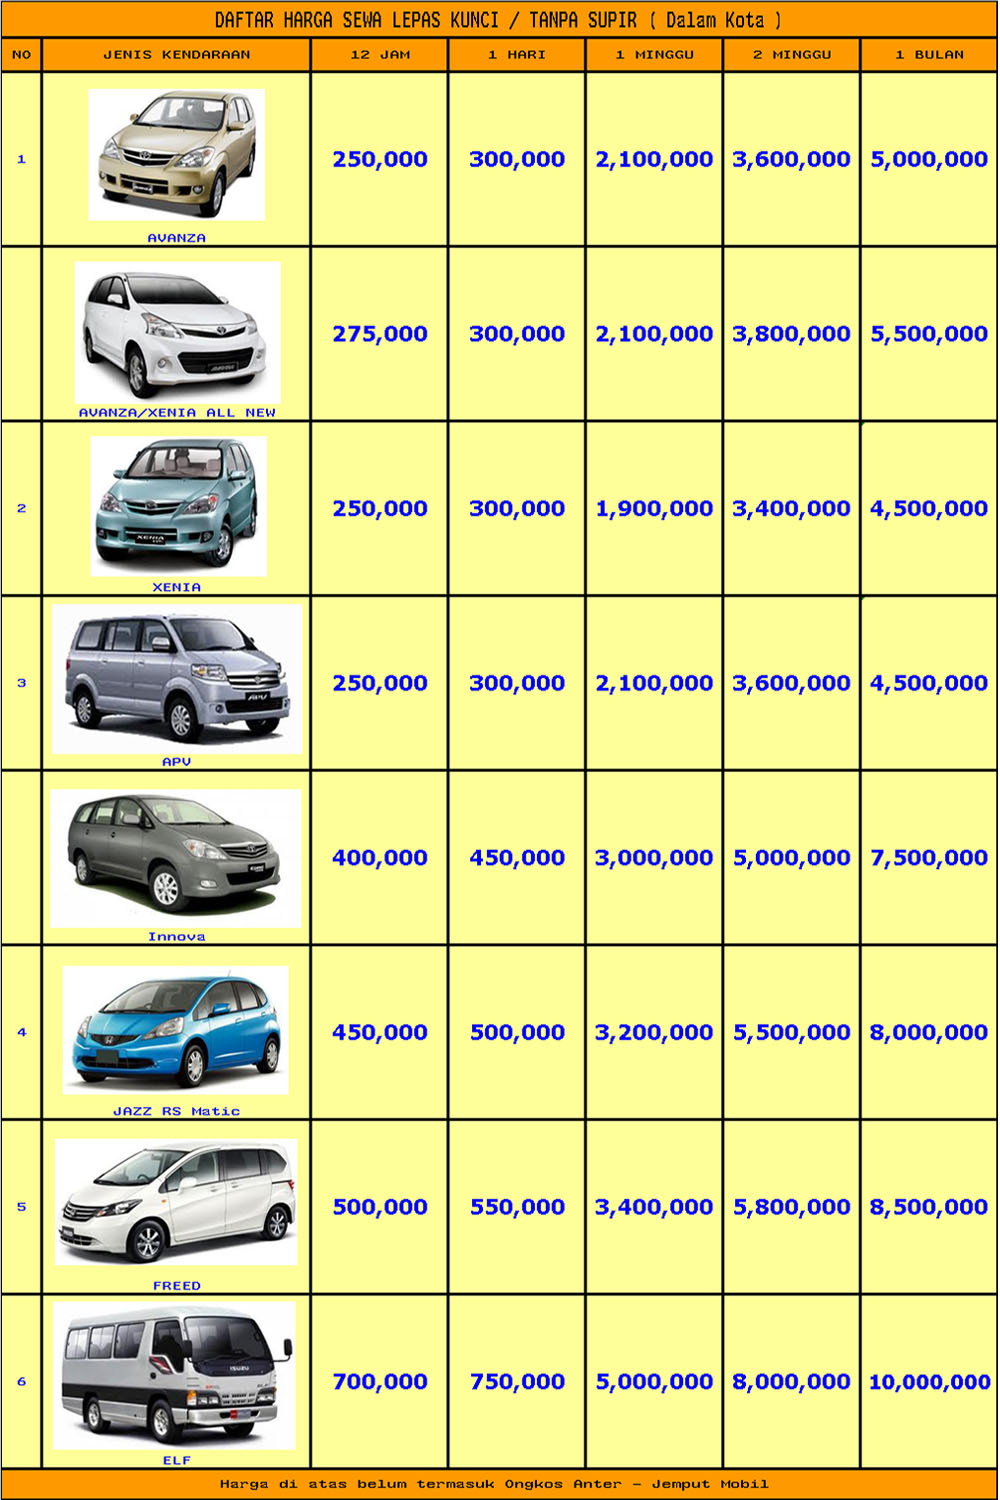  Harga  Rental Sewa Mobil  Murah  Di Purwokerto 085853340000 